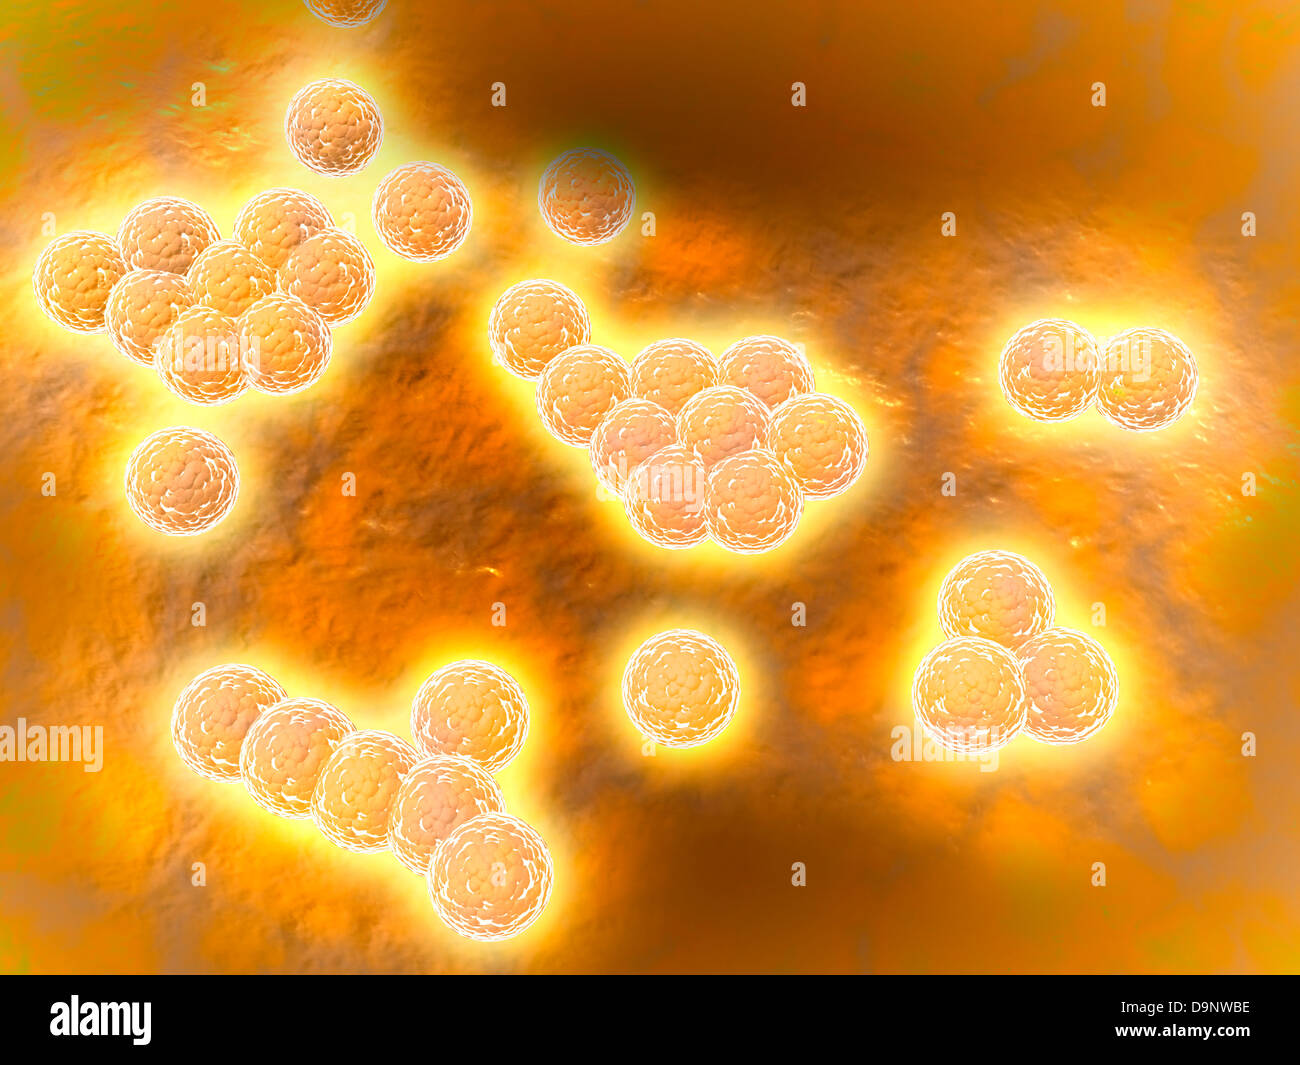 Vista microscópica de Staphylococcus aureus meticilino-resistente. Foto de stock